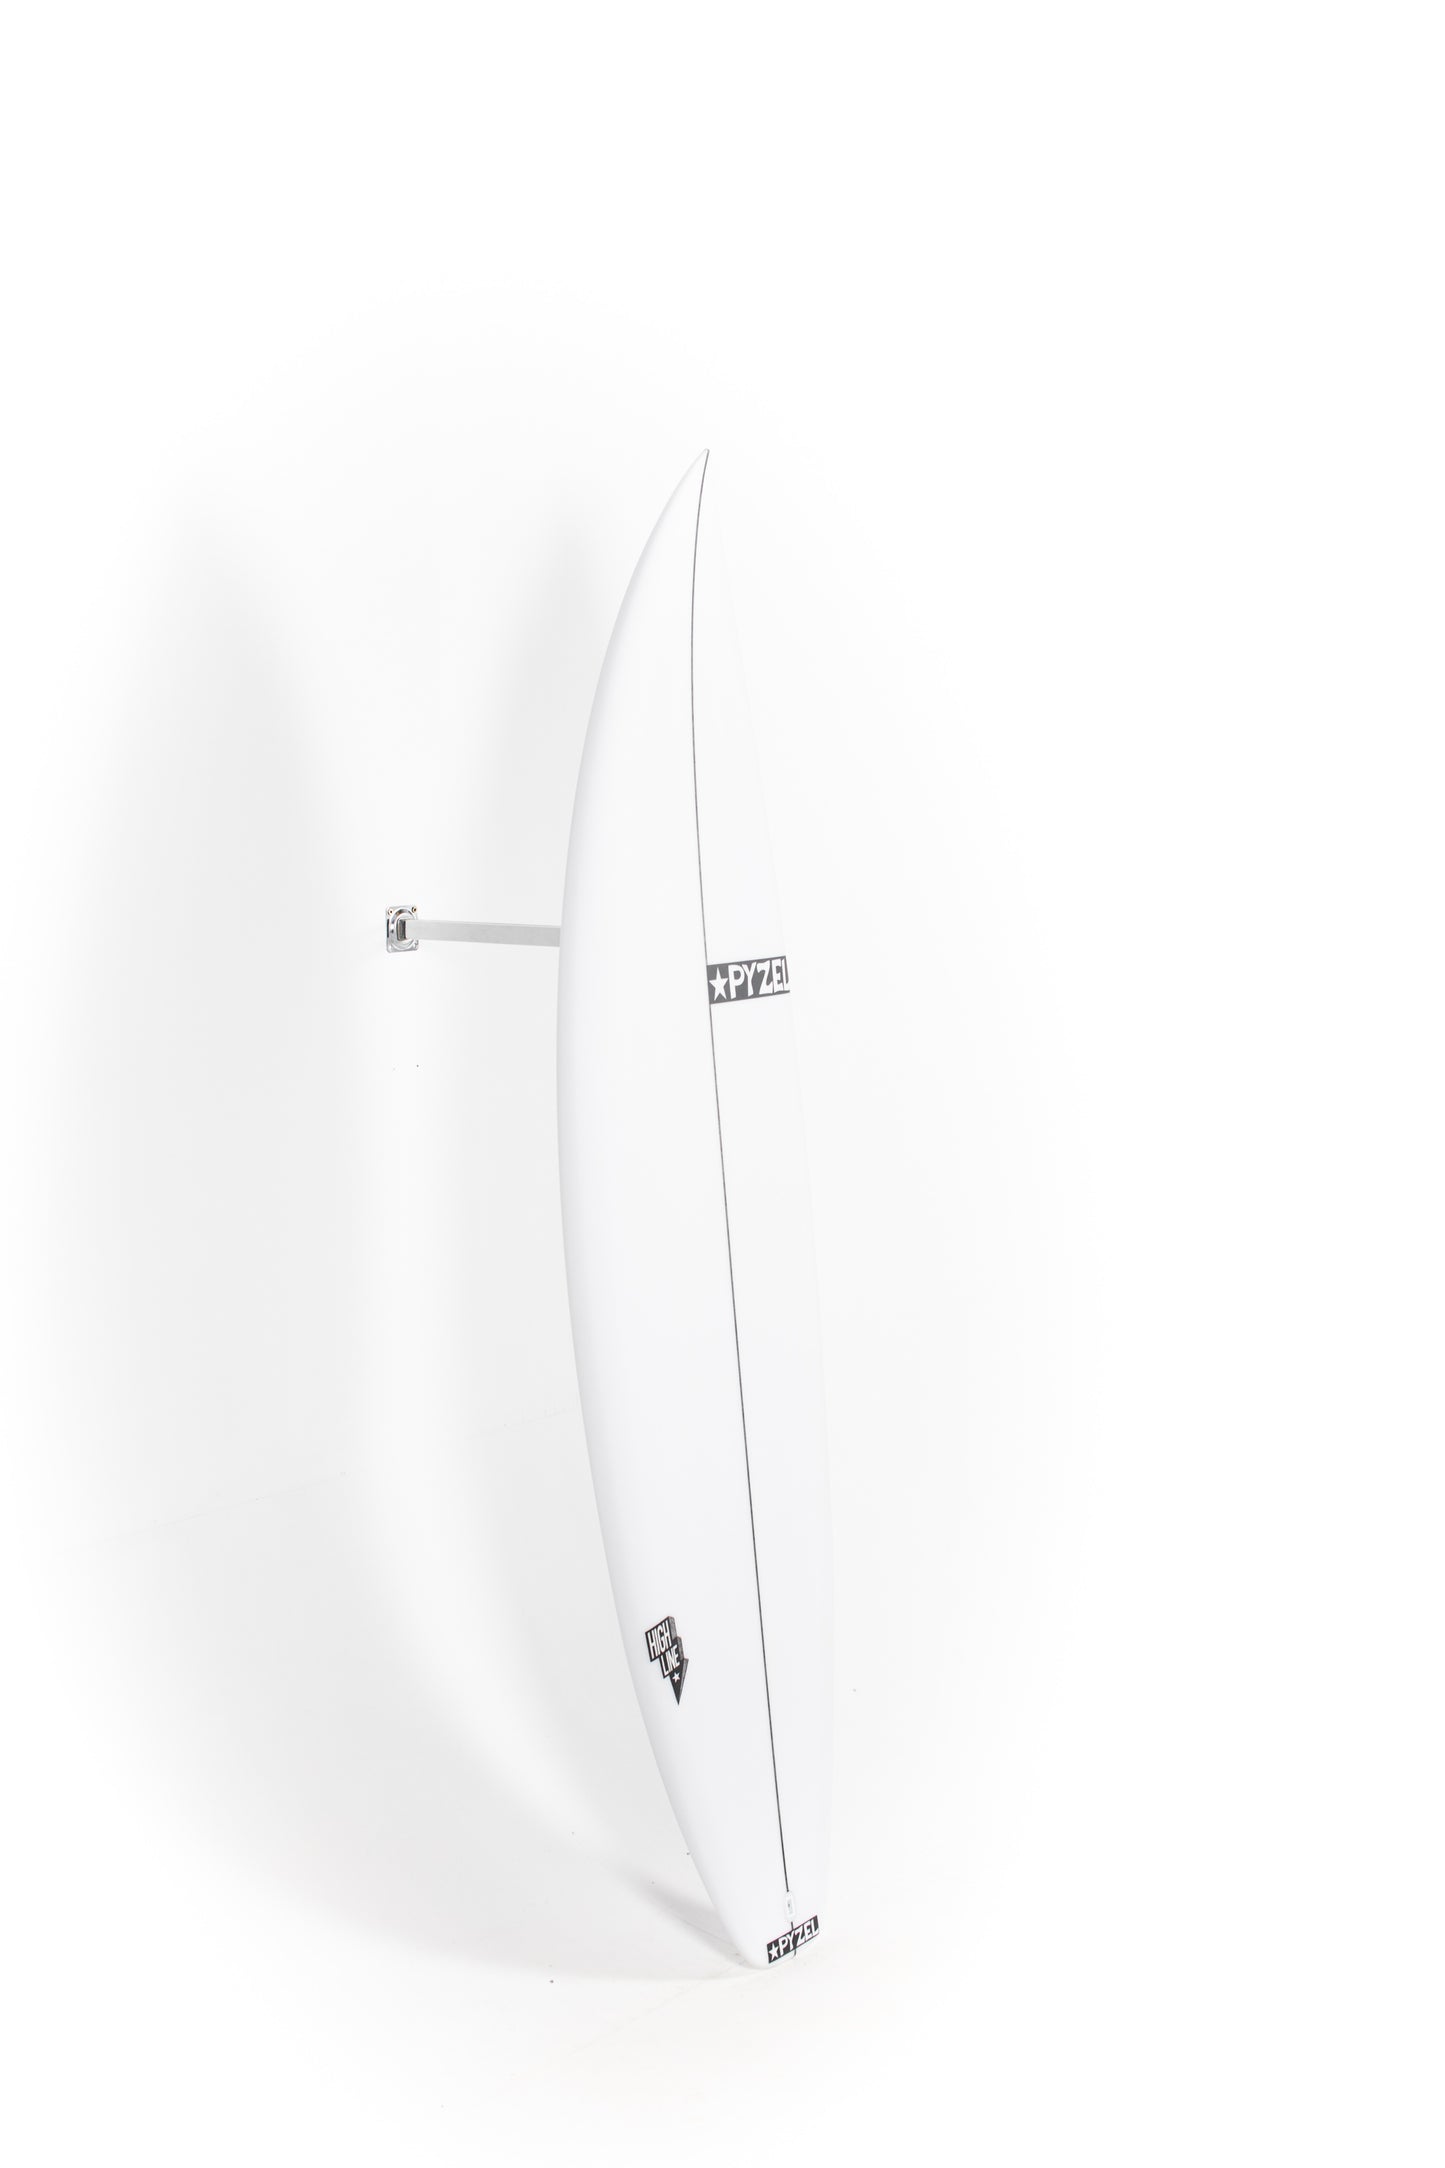 
                  
                    Pukas Surf Shop - Pyzel Surfboards - HIGH LINE - 6'1" x 19 3/8 x 2 9/16 x 30,80L - Ref: 679323
                  
                